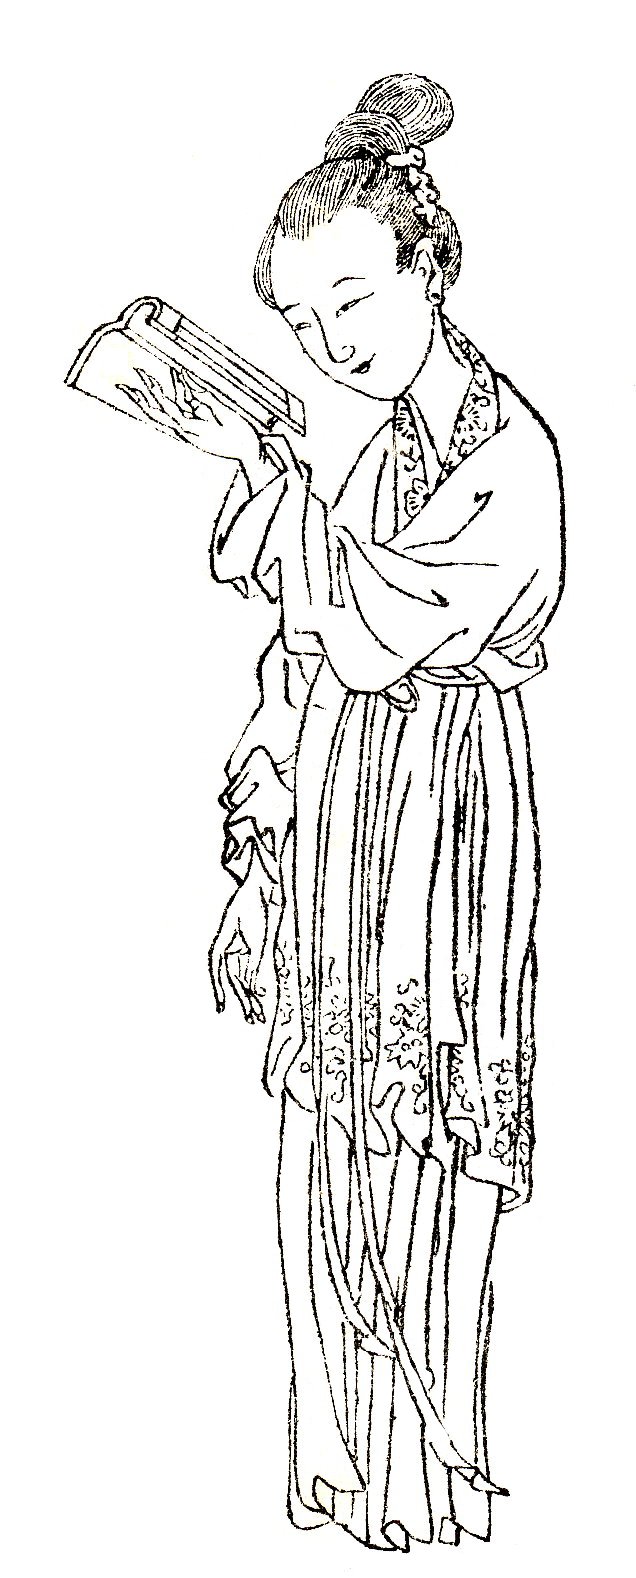 Bild von Ban Zhao von Shangguan Zhou (上官周, geb. 1665)